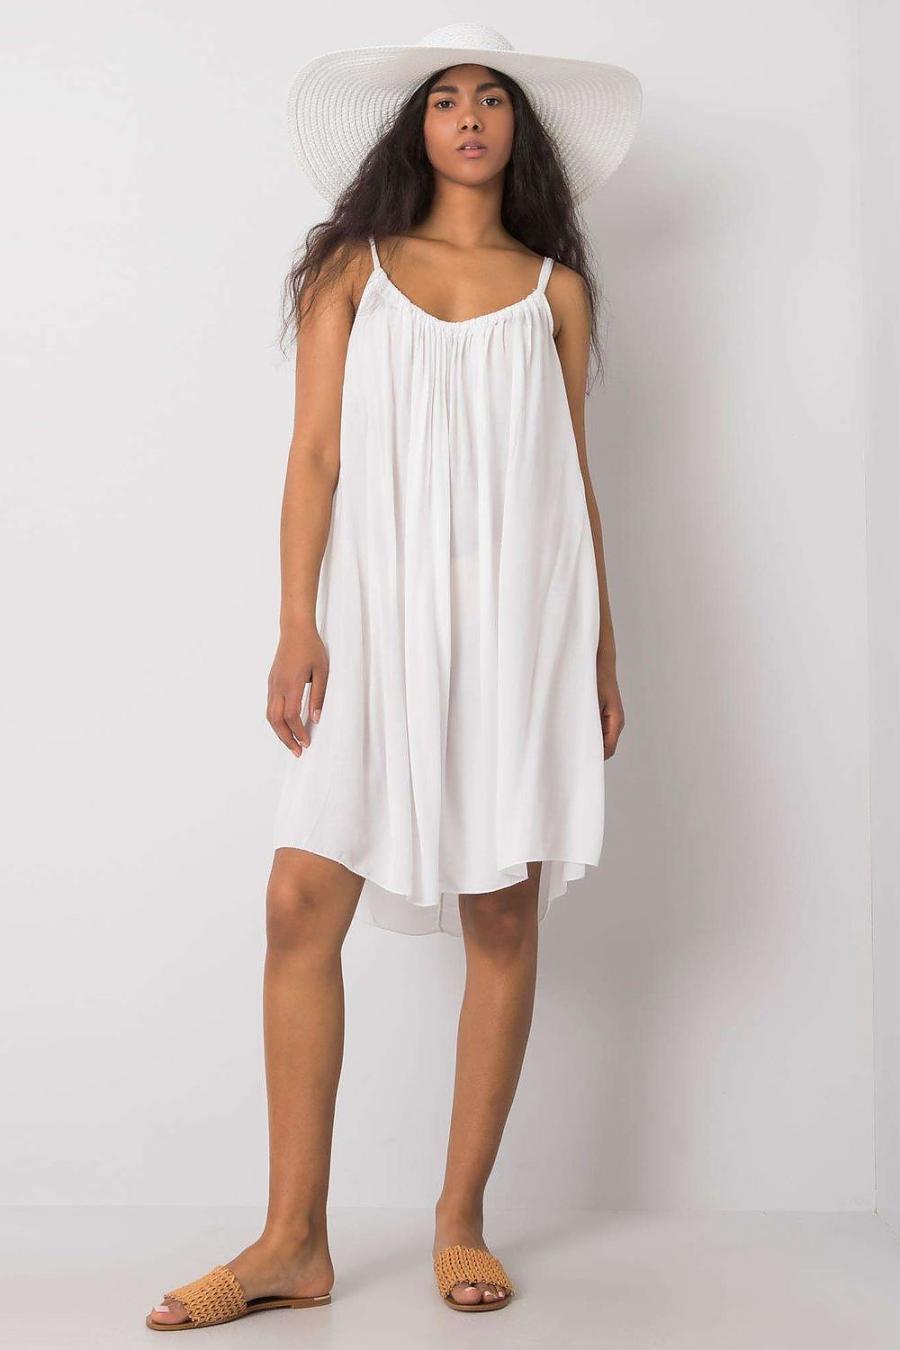 Ostatní značky šaty dámské 165036 - Bílá - velikost M